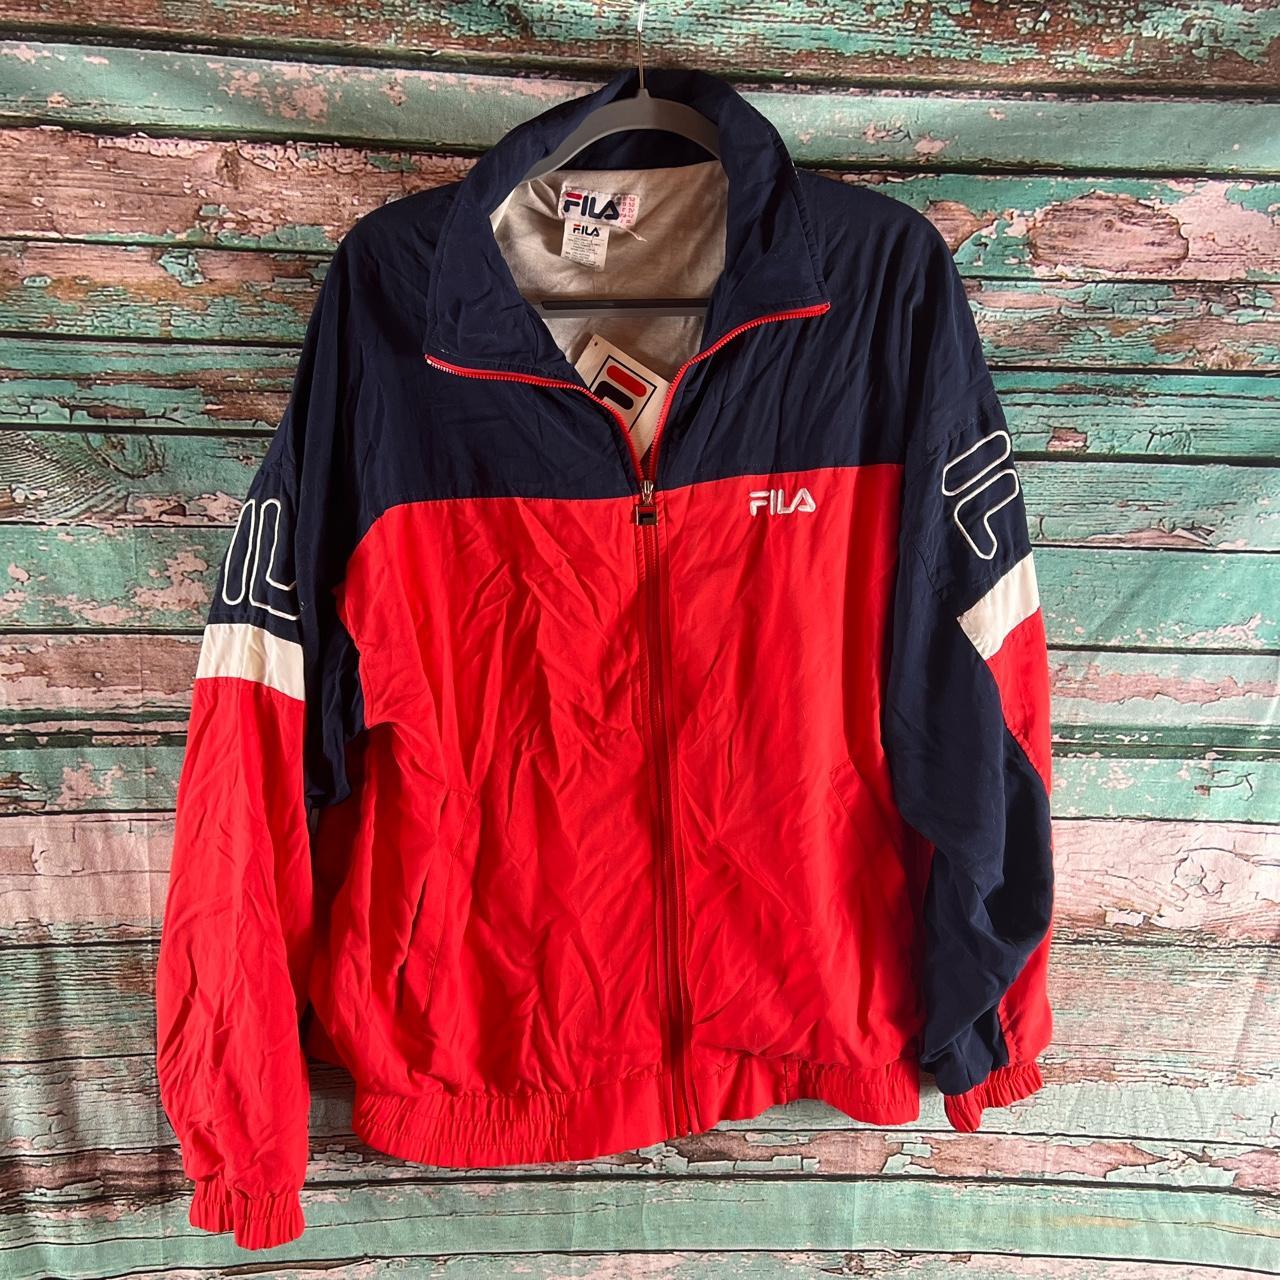 højen Seraph taxa Vintage 90s early 2000s FILA track sports jacket/... - Depop